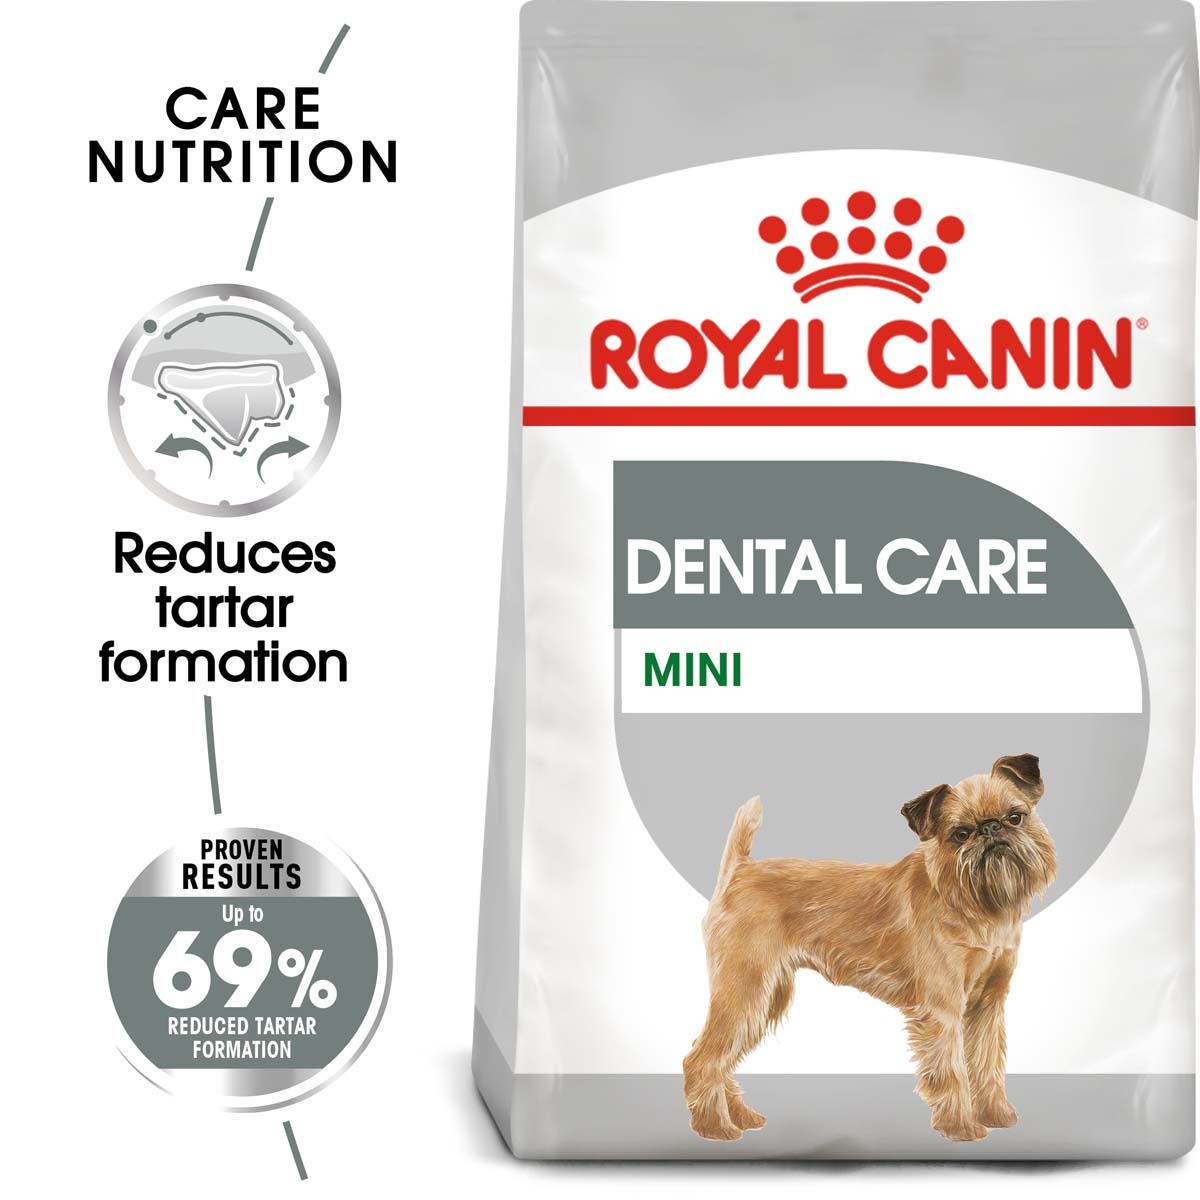 ROYAL CANIN DENTAL CARE MINI granule pro malé psy s citlivými zuby